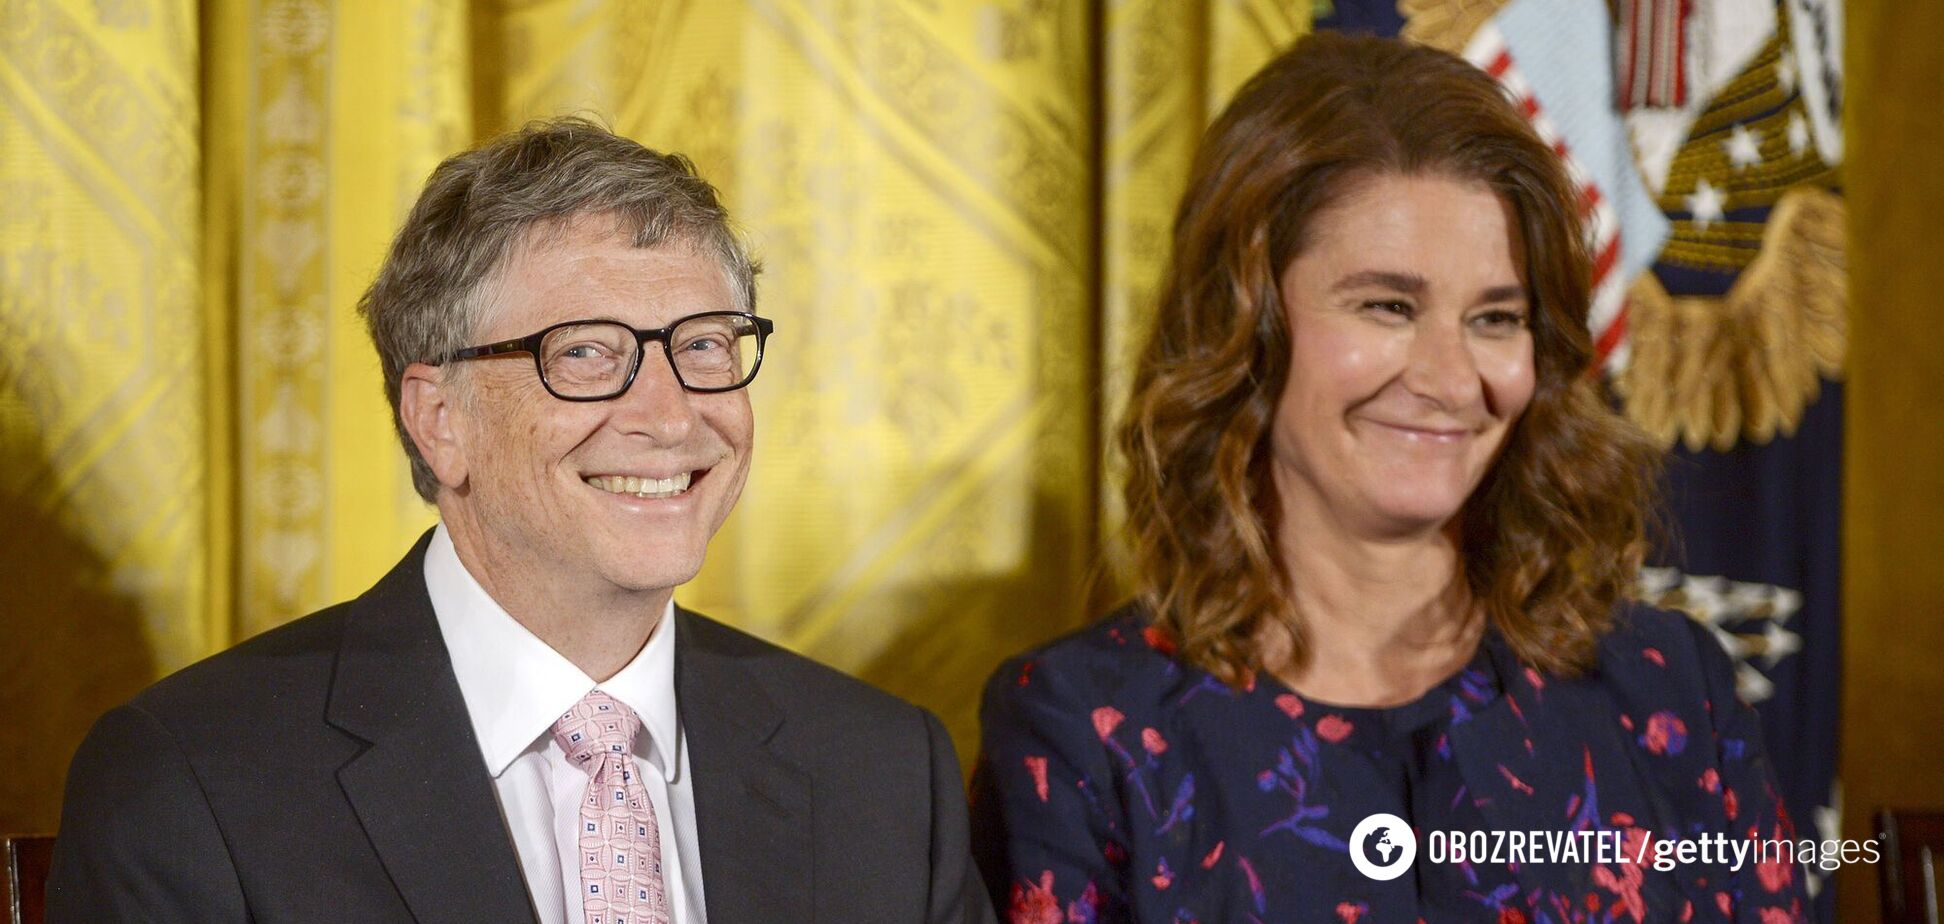 Яку частку акцій Білл Гейтс переказав дружині в день новини про розлучення